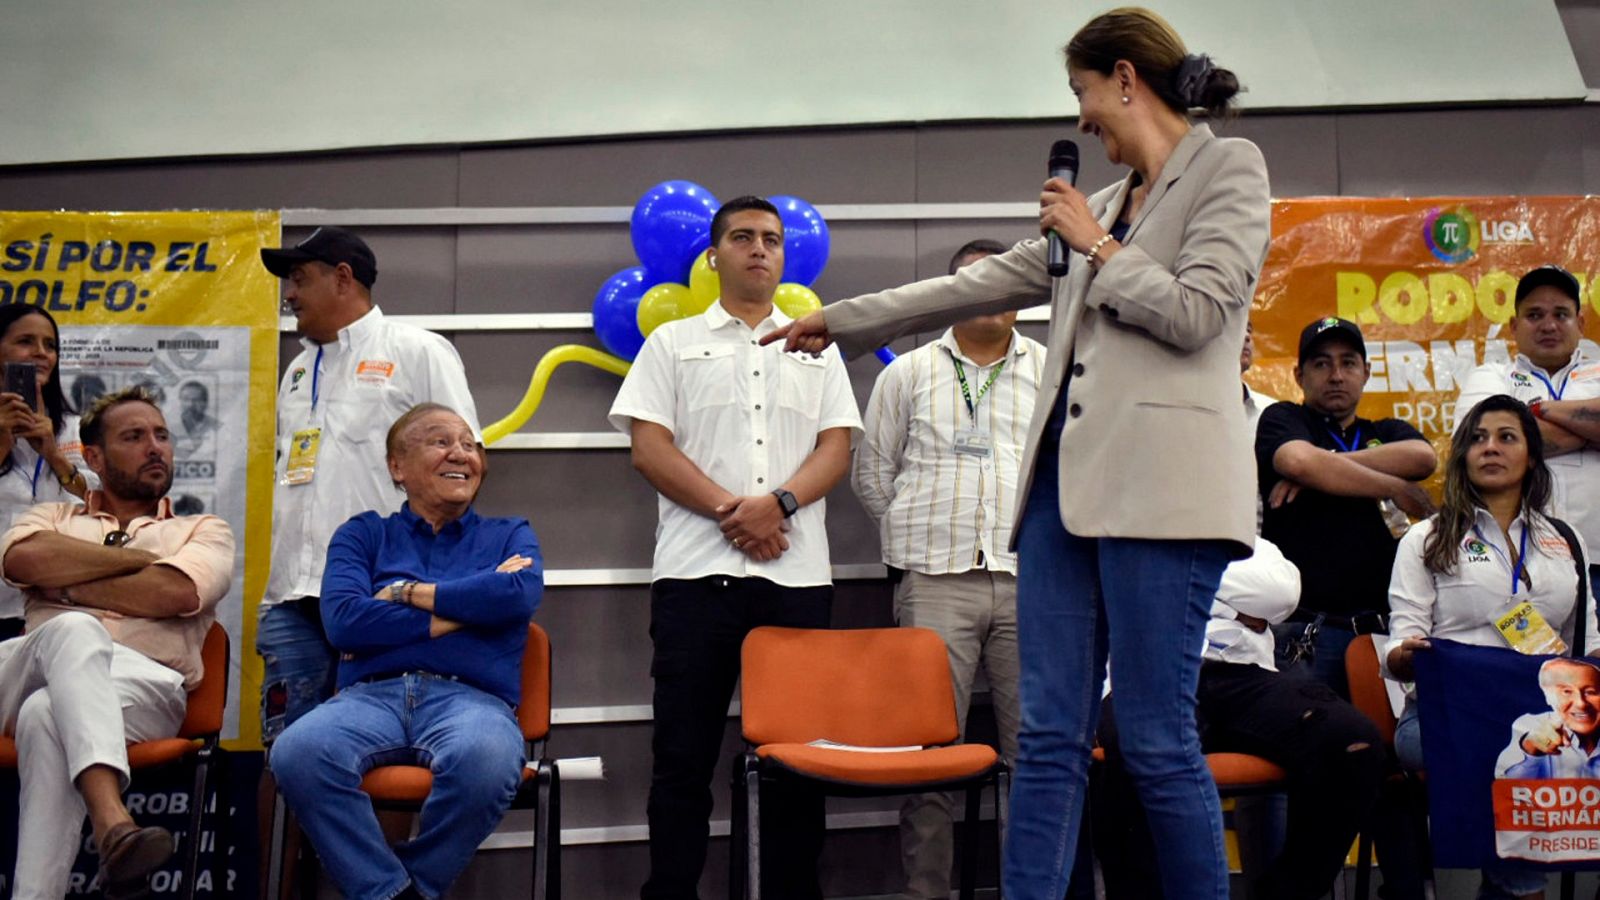 Una imagen de Íngrid Betancourt señalando con el dedo a Rodolfo Hernández durante un acto electoral el viernes 20 de mayo de 2022 en Barranquilla, Colombia.